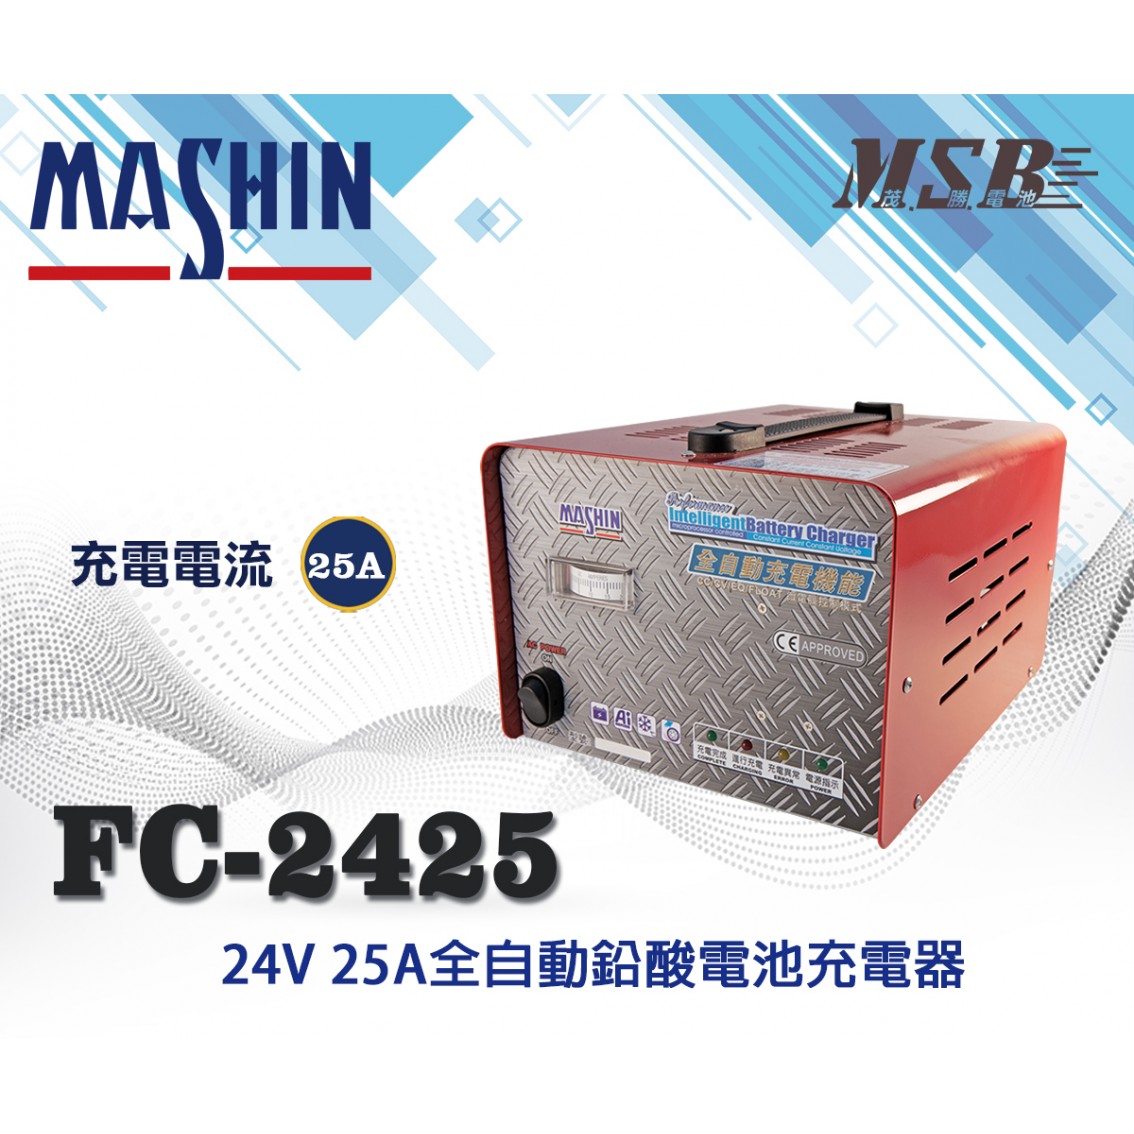 FC-2425